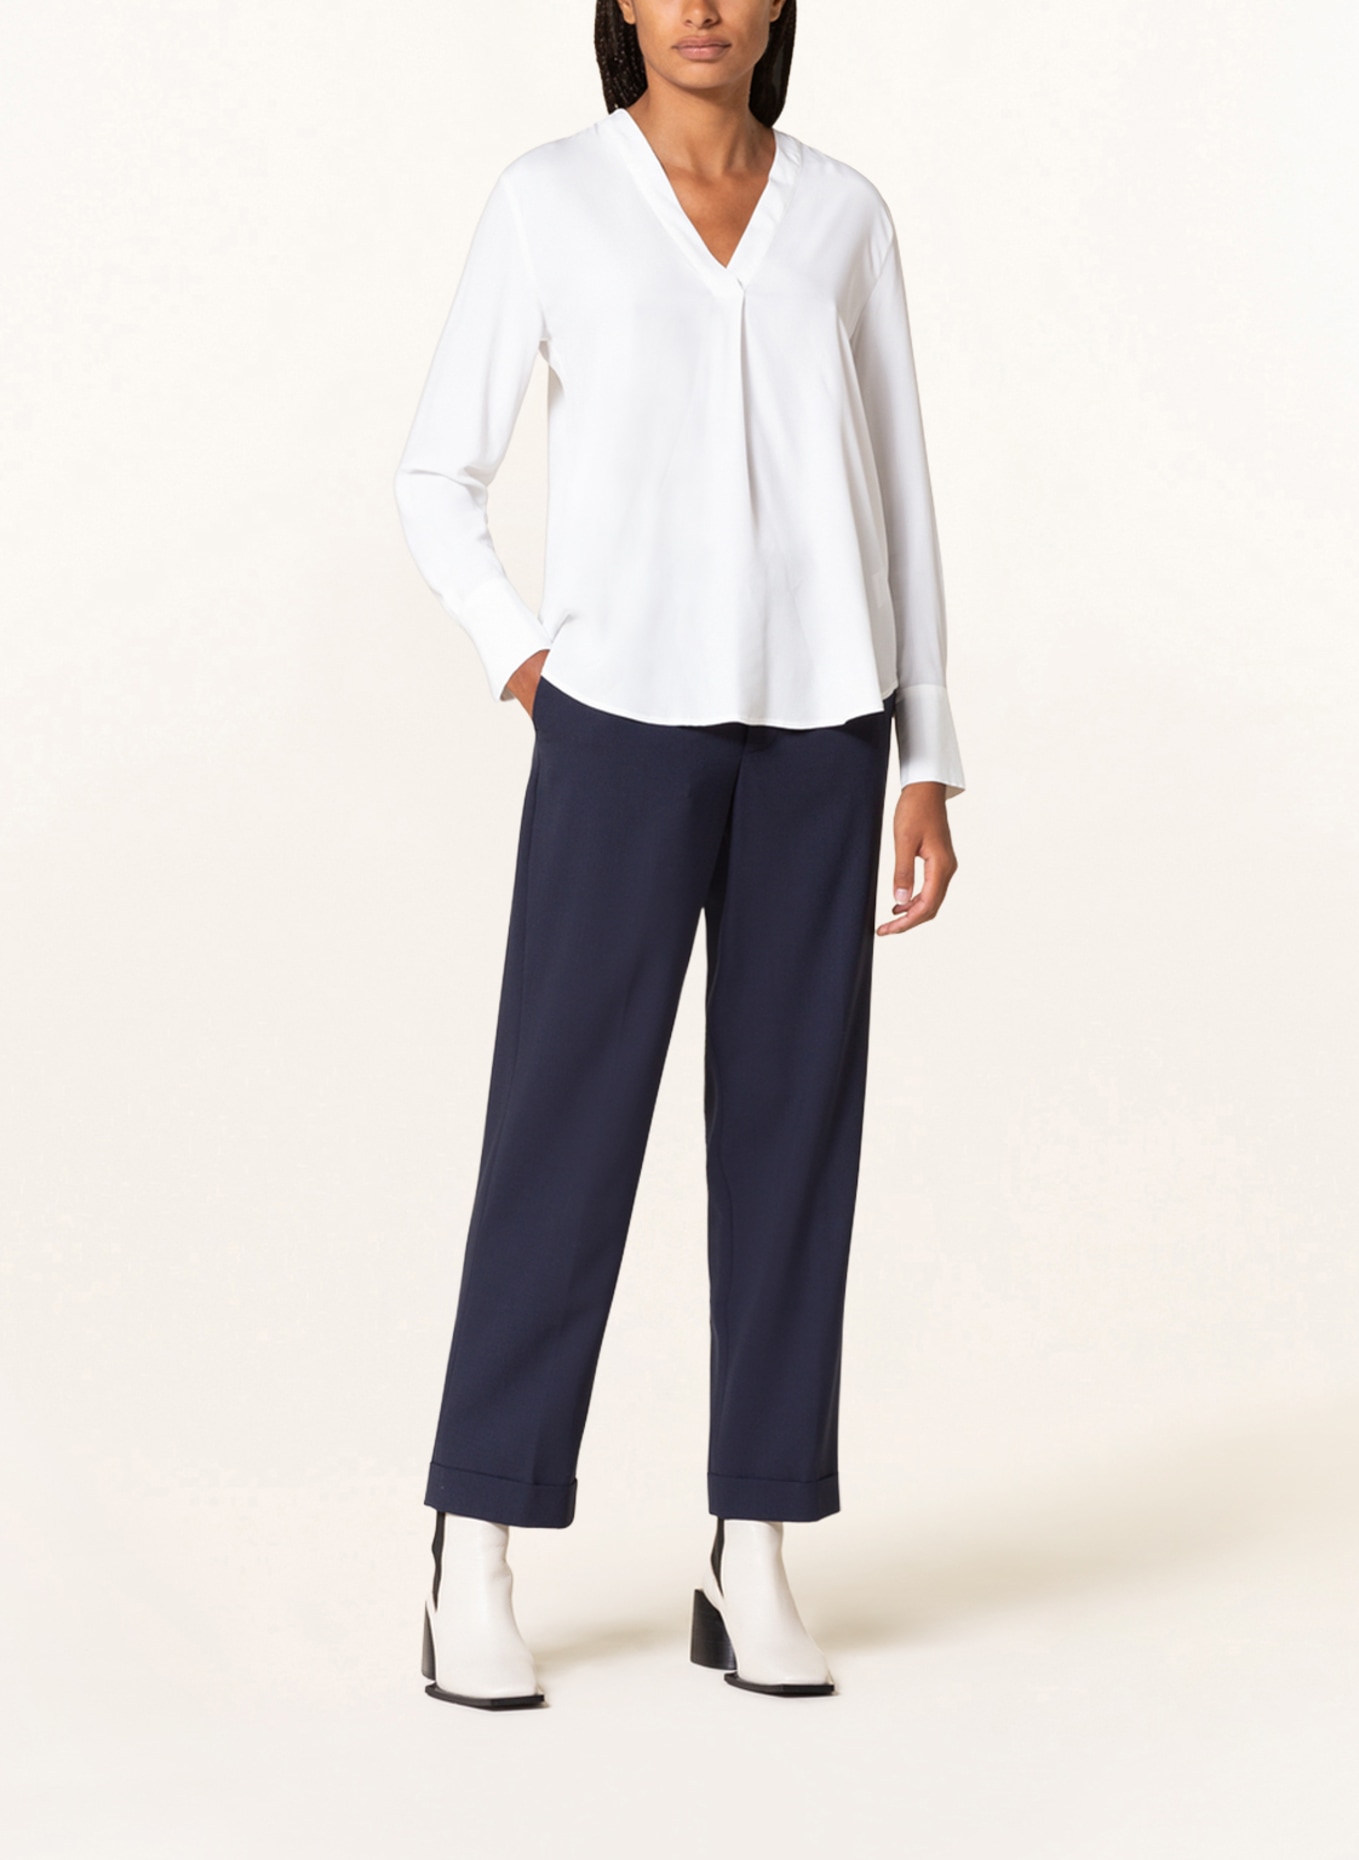 TIGER OF SWEDEN Shirt blouse KASIA 2, Color: WHITE (Image 2)